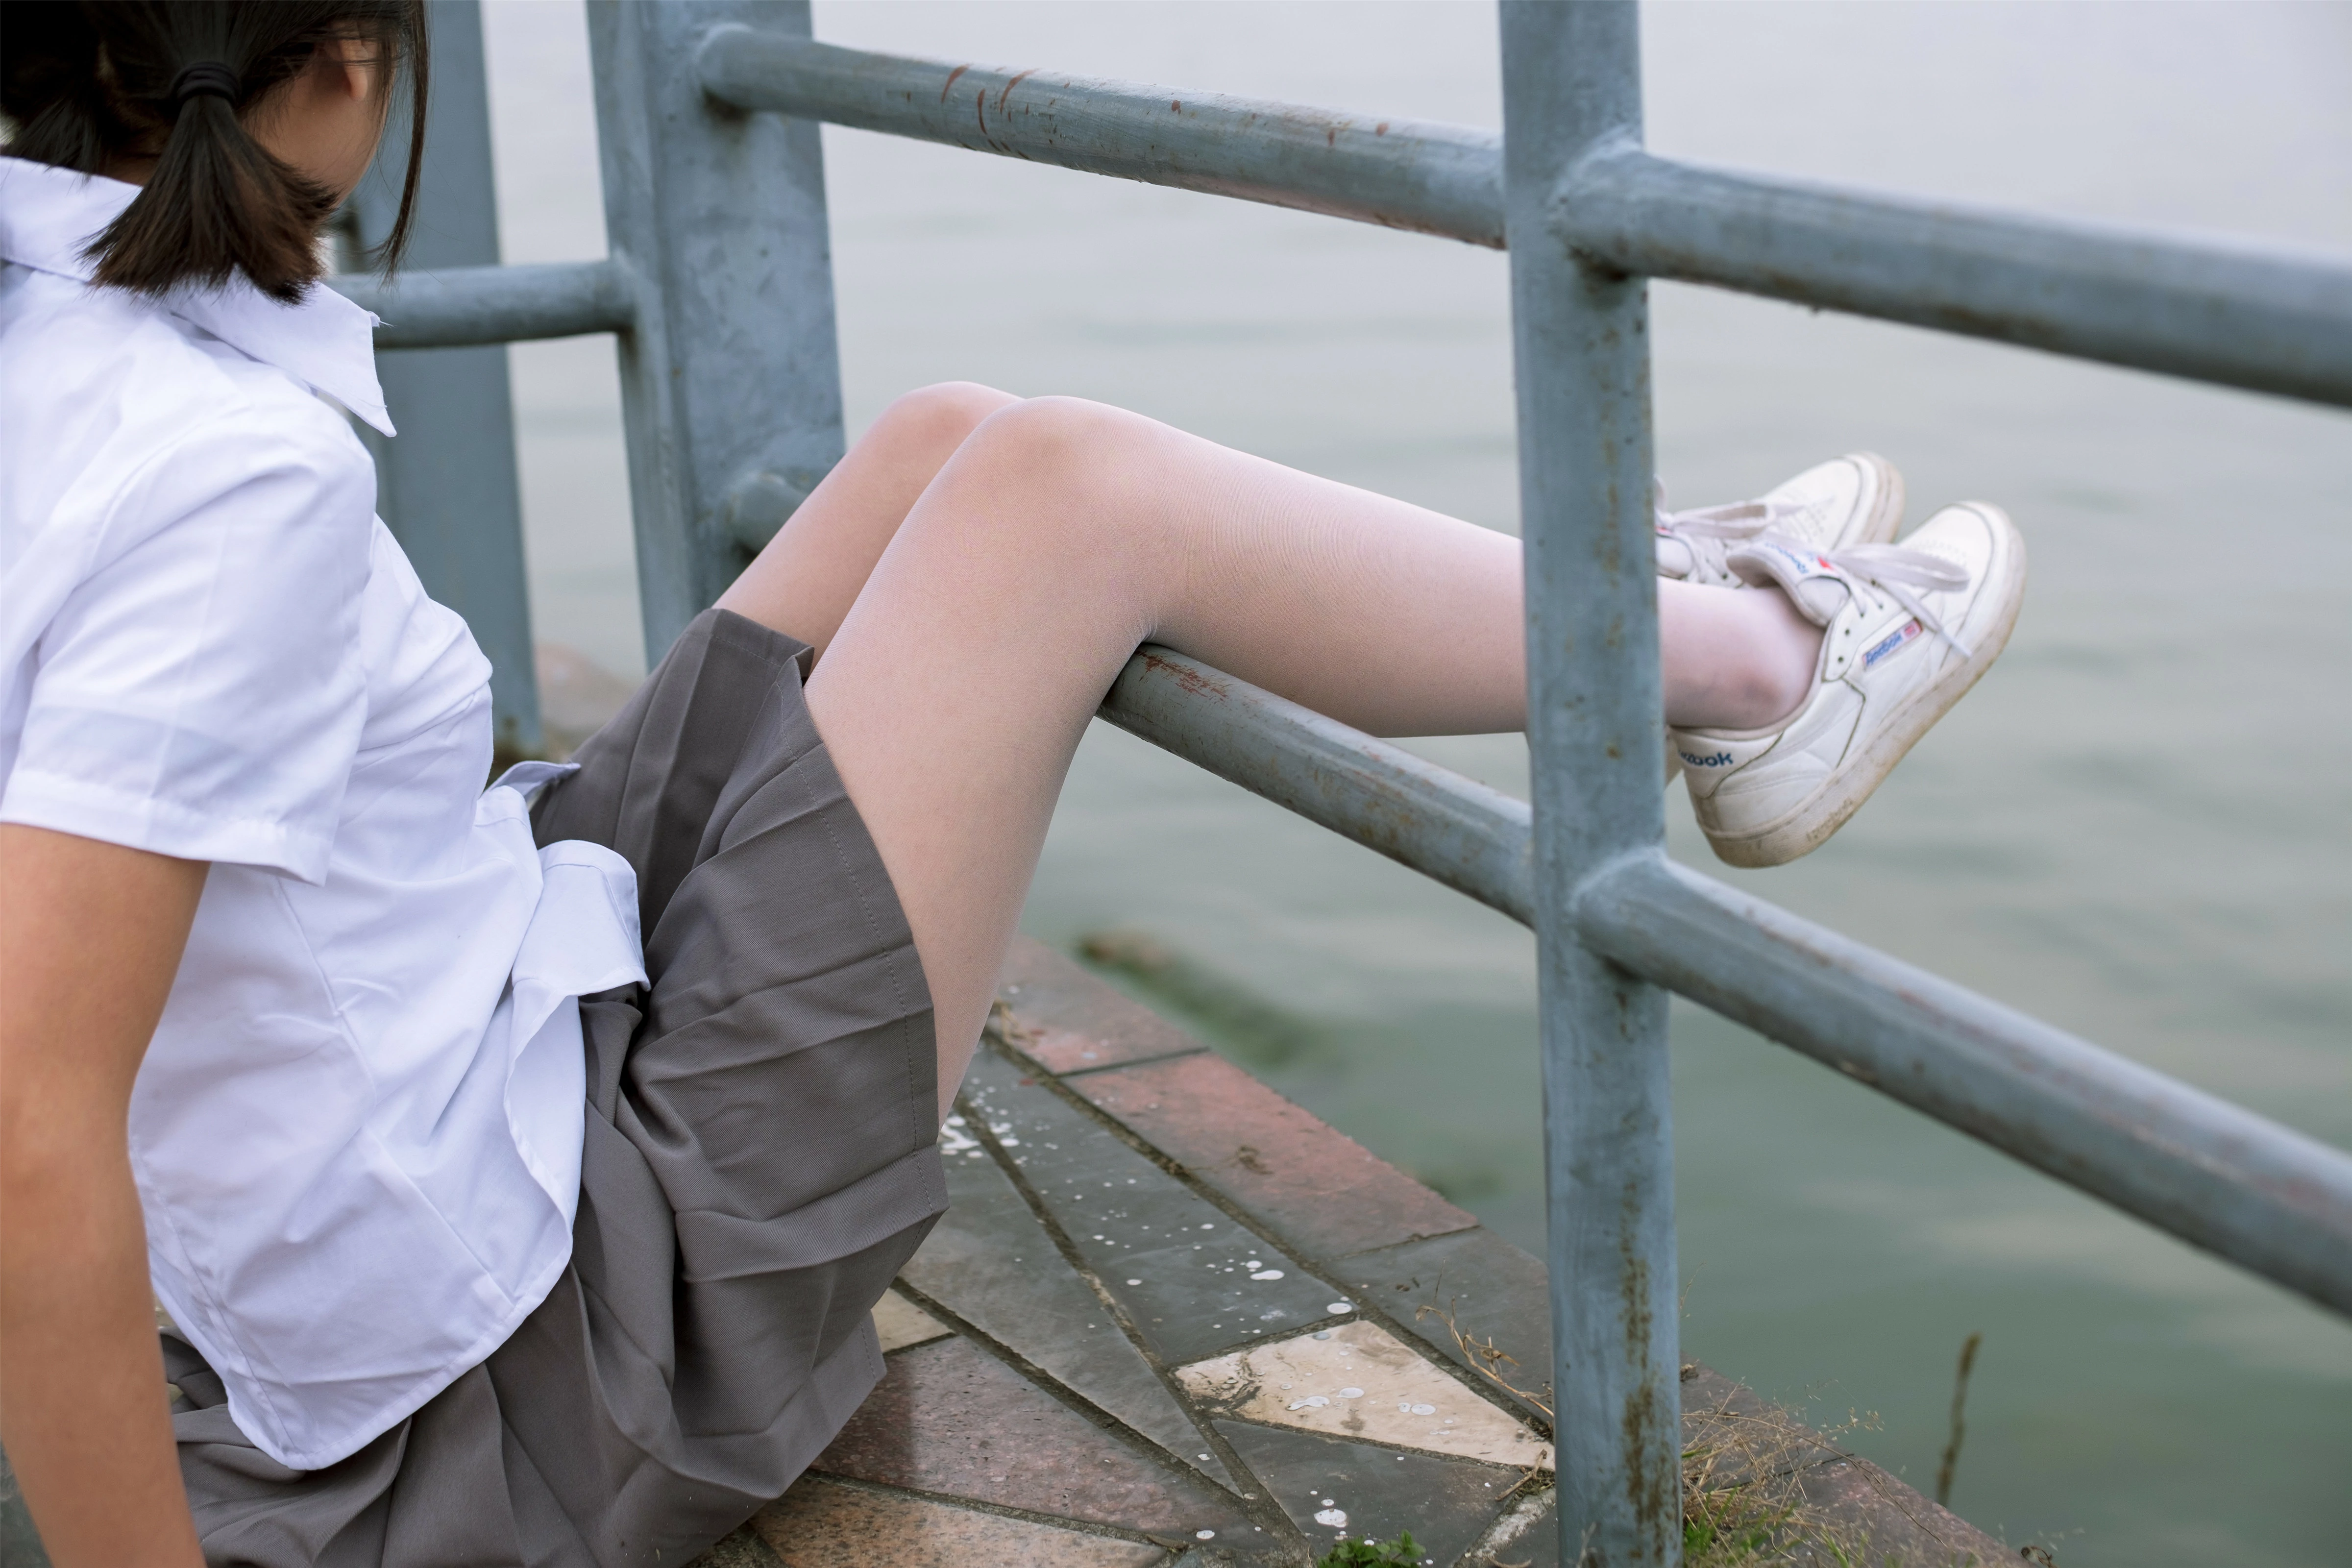 [森萝财团]BETA-014 清纯可爱小萝莉 白色短袖与灰色短裙加白色丝袜美腿玉足性感私房写真集,